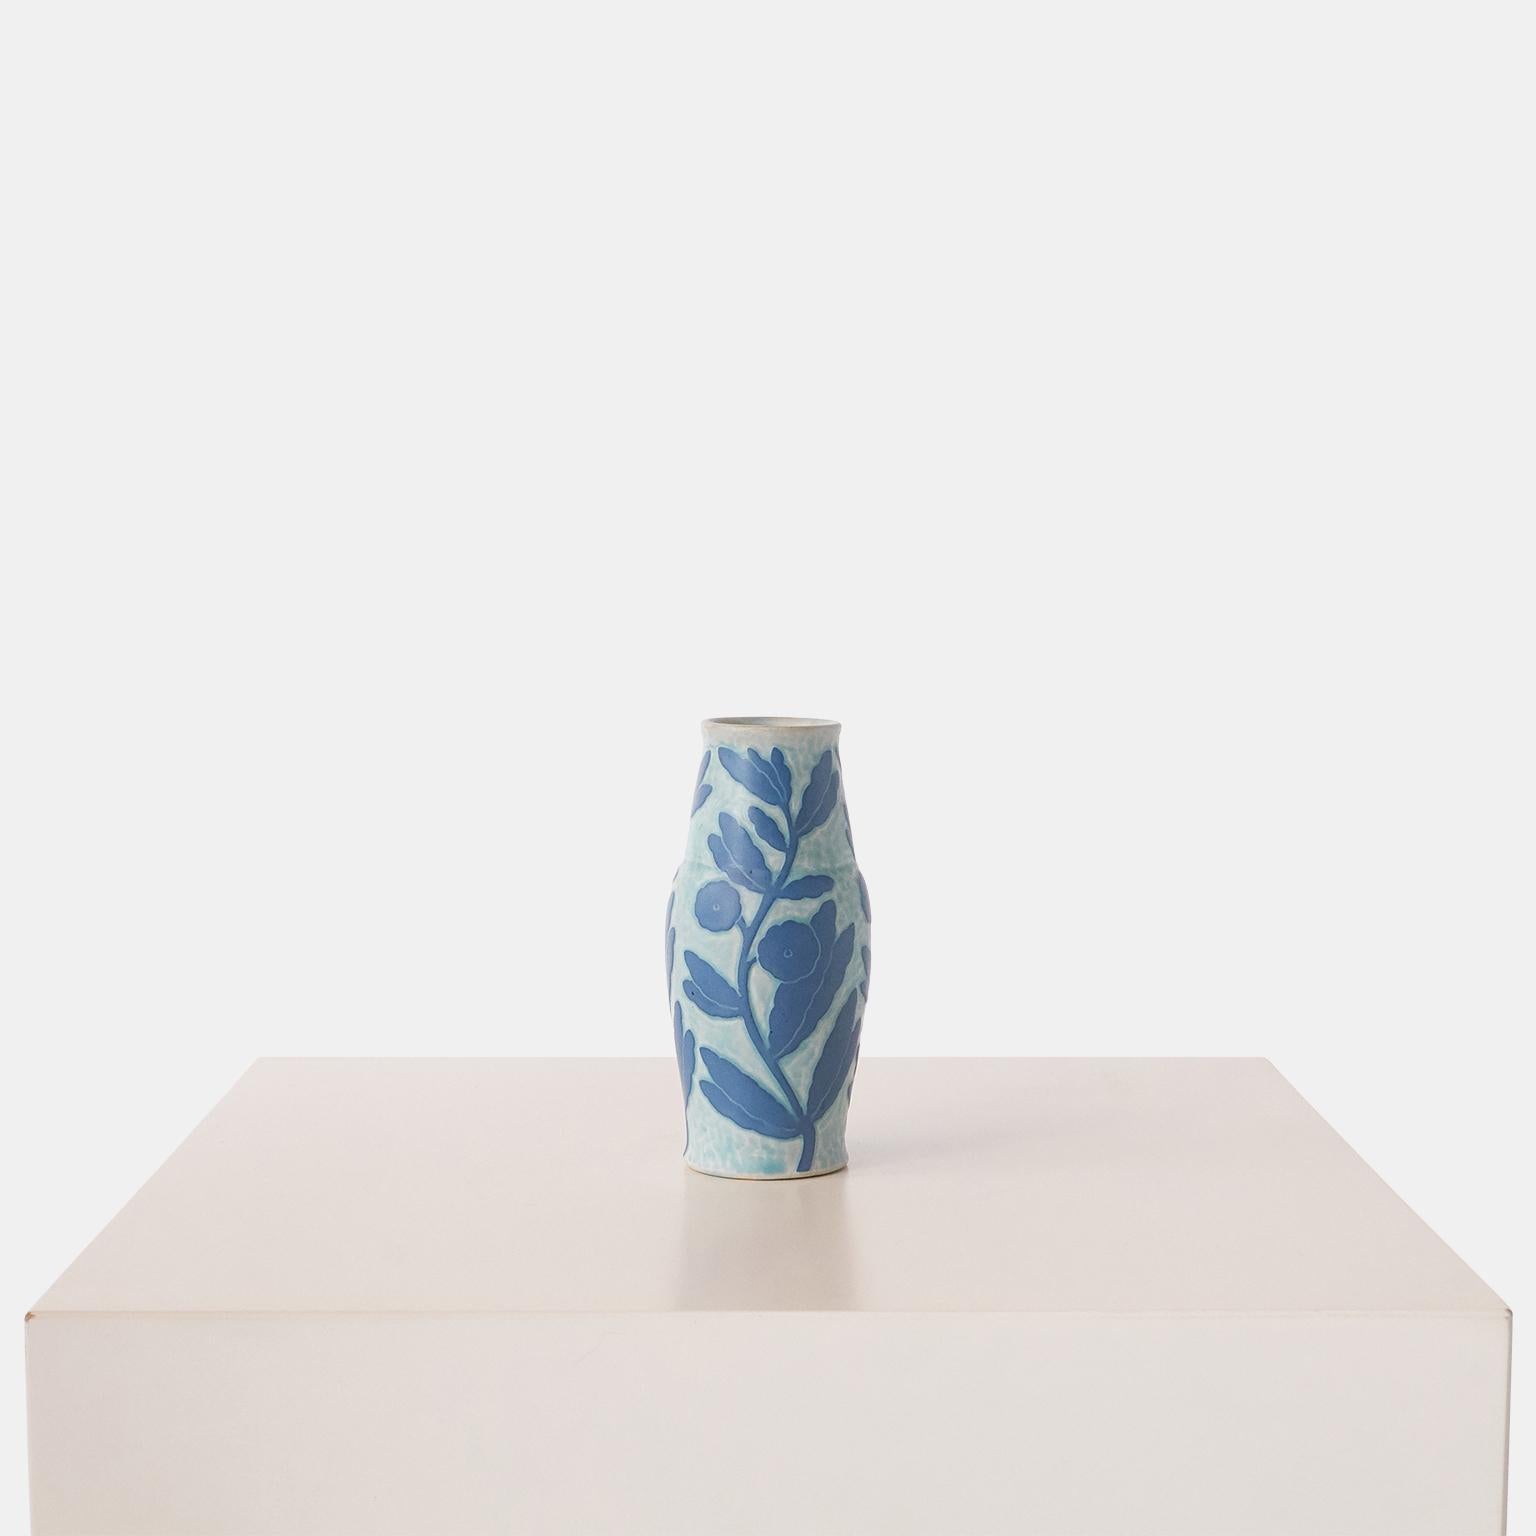 Eine handgefertigte blaue Vase von Josef Ekberg für Gustavsberg. Jedes Stück ist ein Unikat und mit der von Ekberg selbst entwickelten Sgrafitto-Technik verziert.

Unterzeichnet: GUSTAVSBERG, 1925 JE